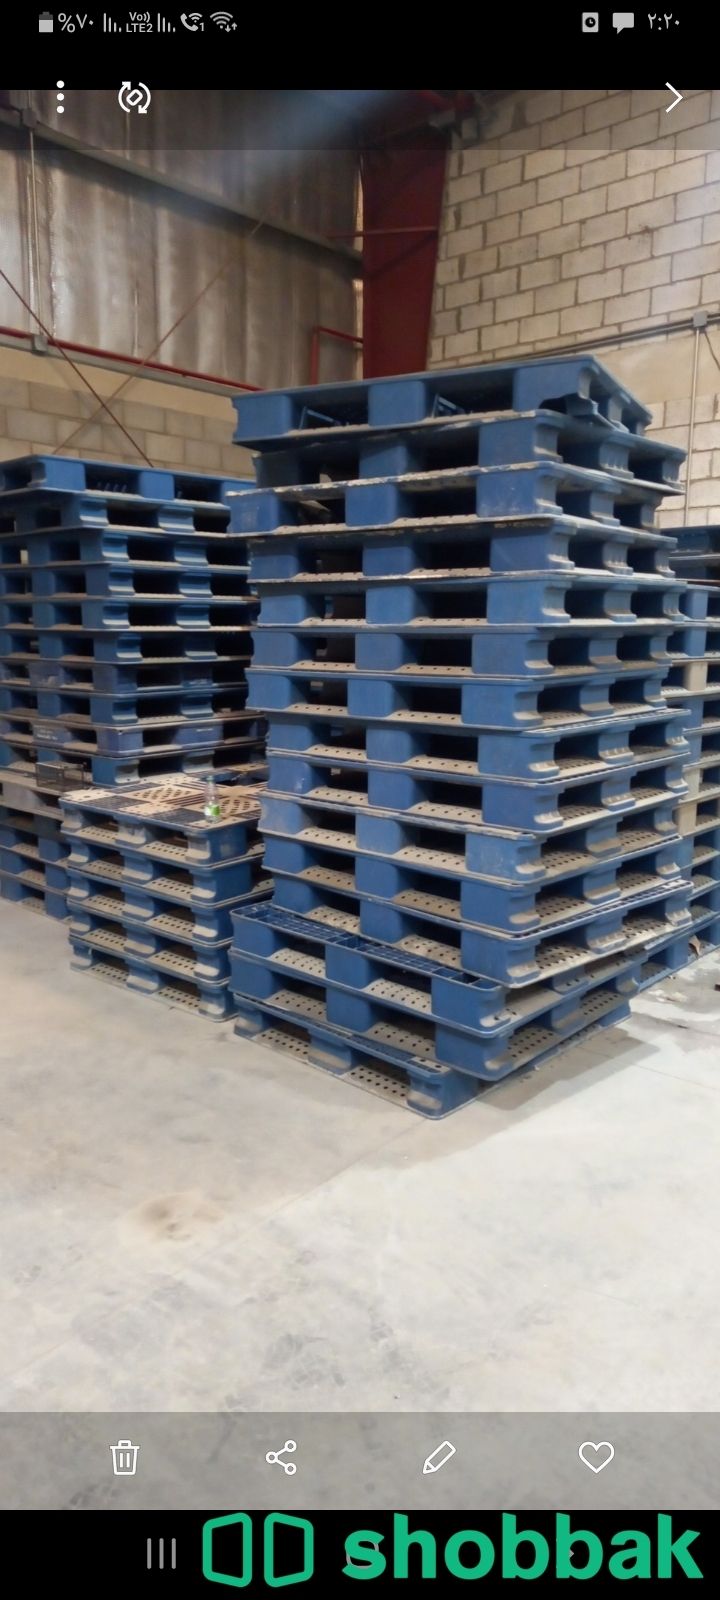 طبليات للبيع مستعملة pallets  Shobbak Saudi Arabia